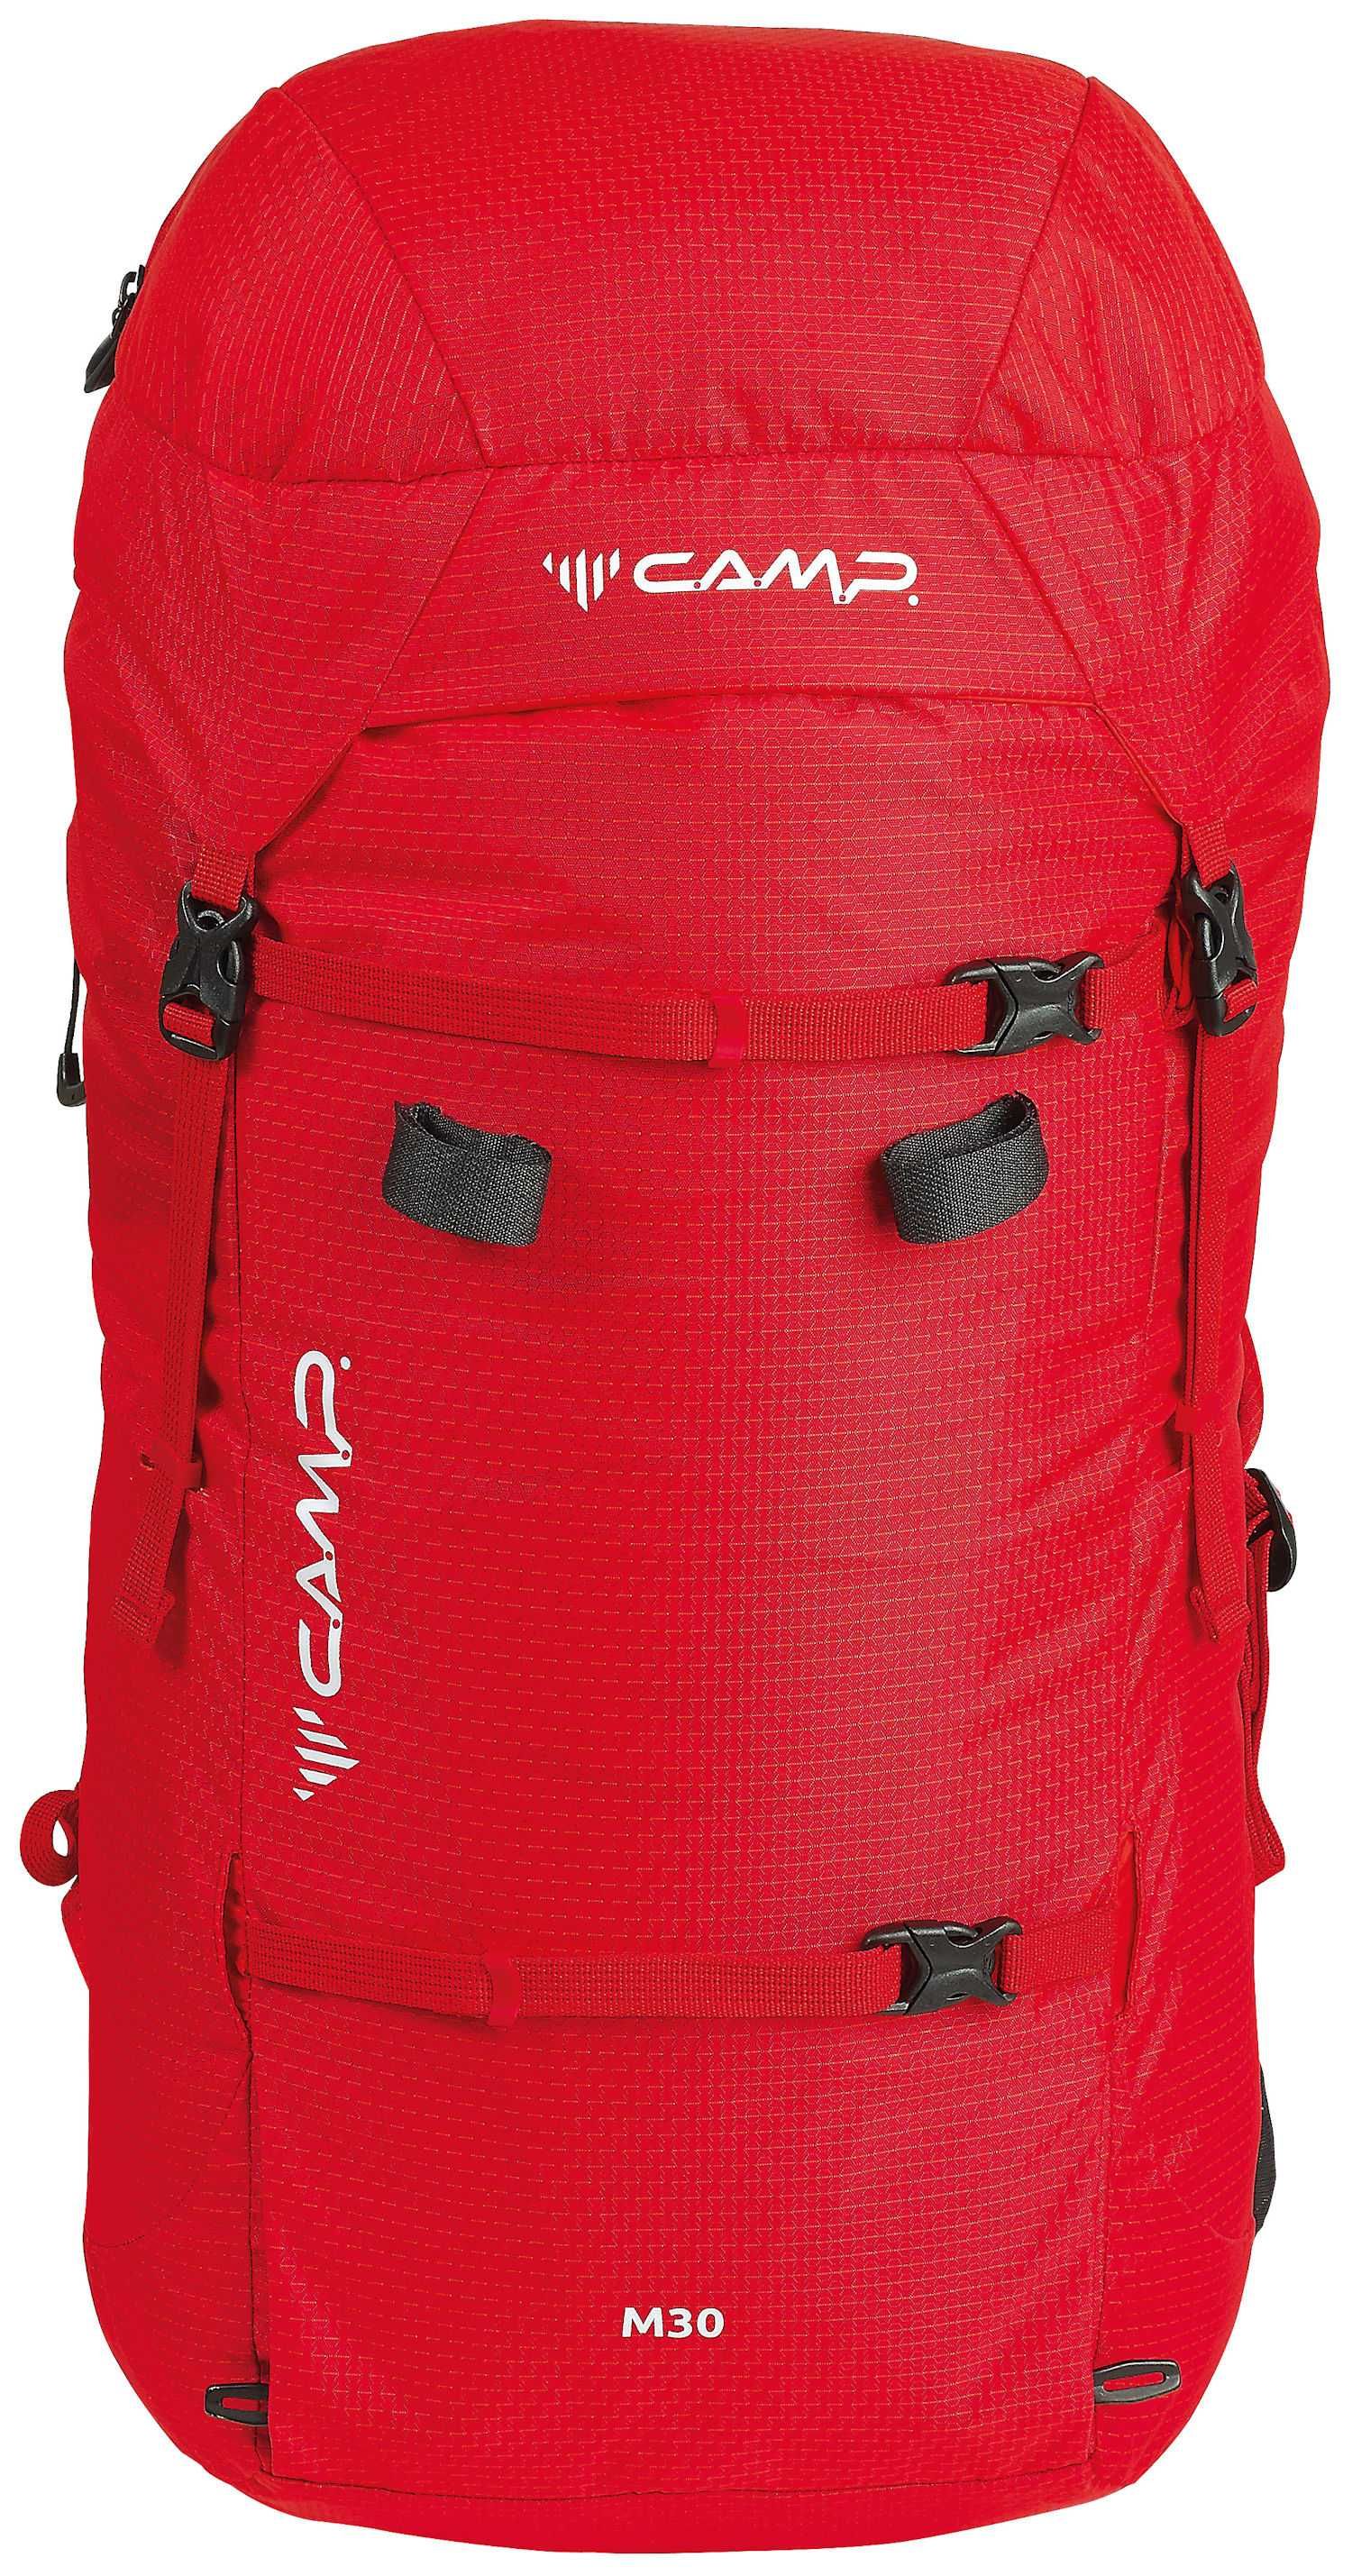 Plecak Camp - M30 pojemność 30L (czerwony)